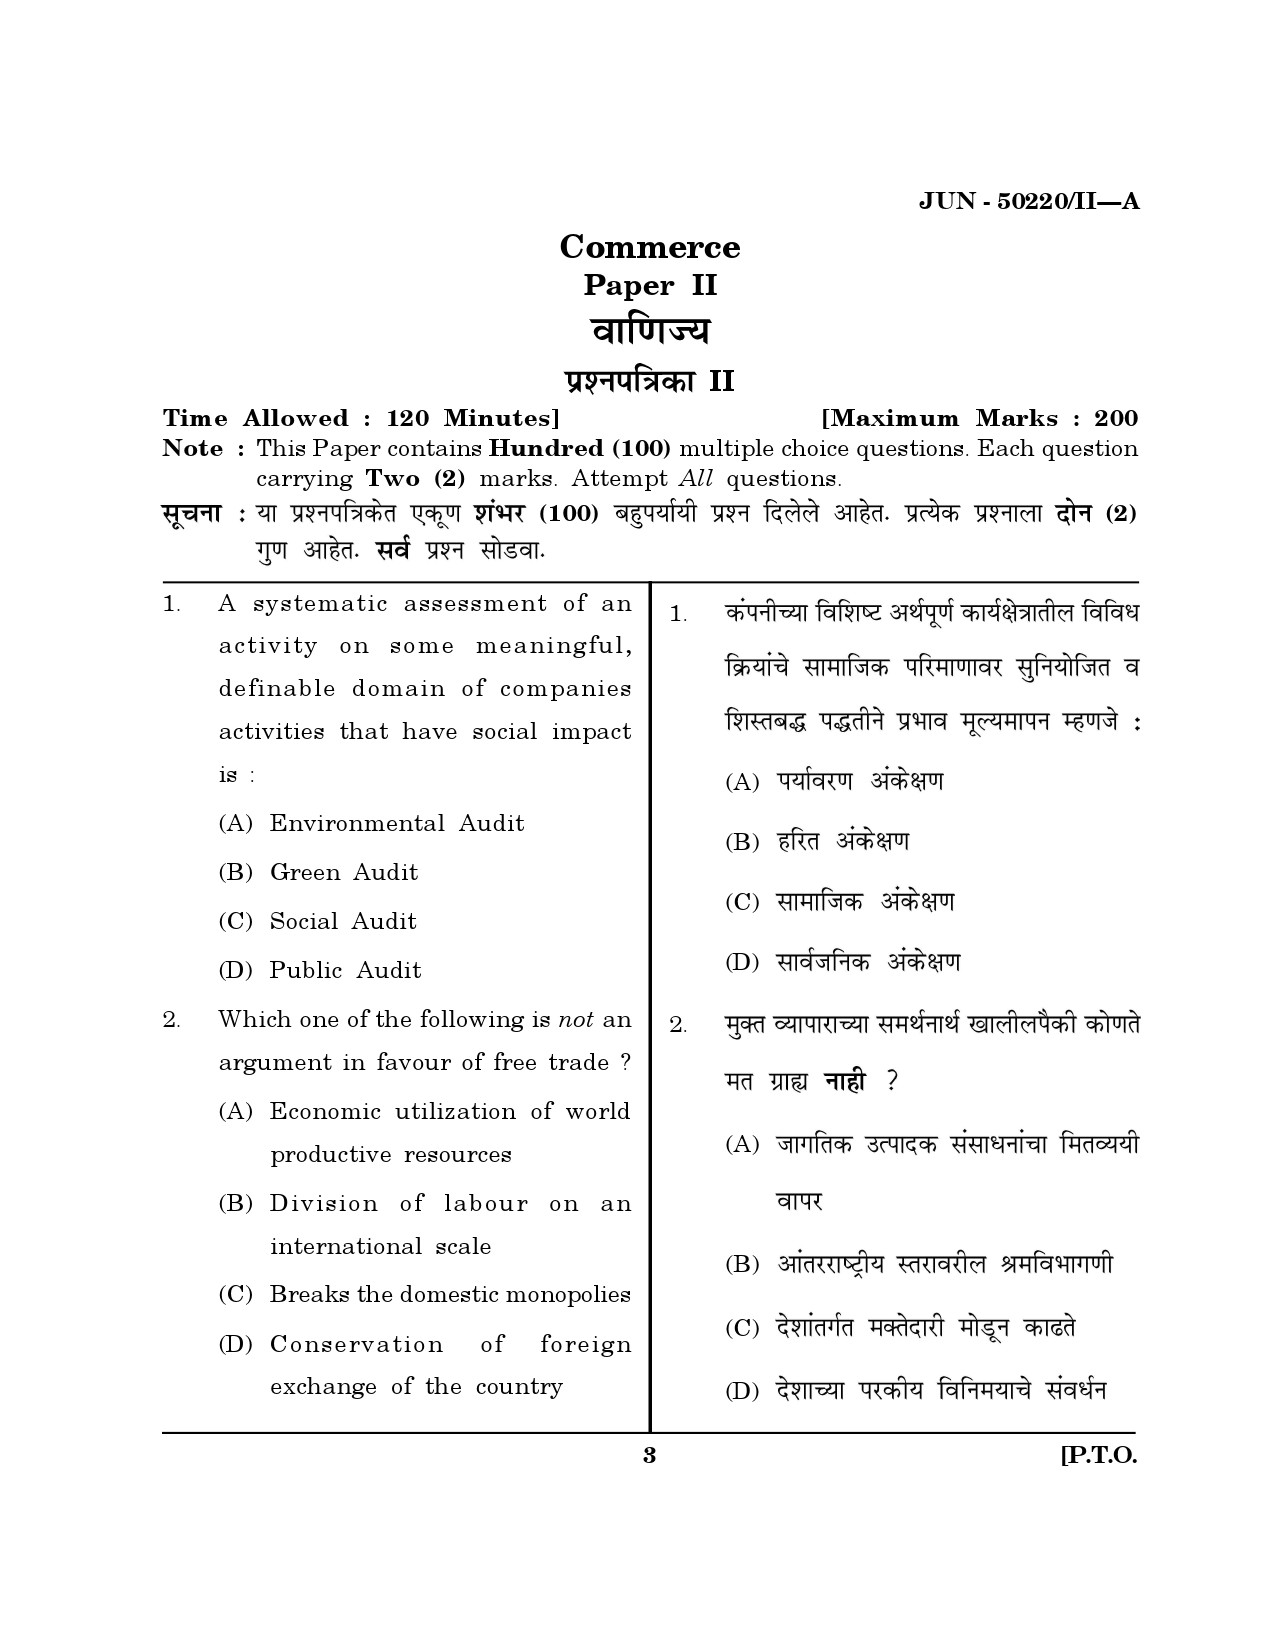 Maharashtra SET Commerce Question Paper II June 2020 2